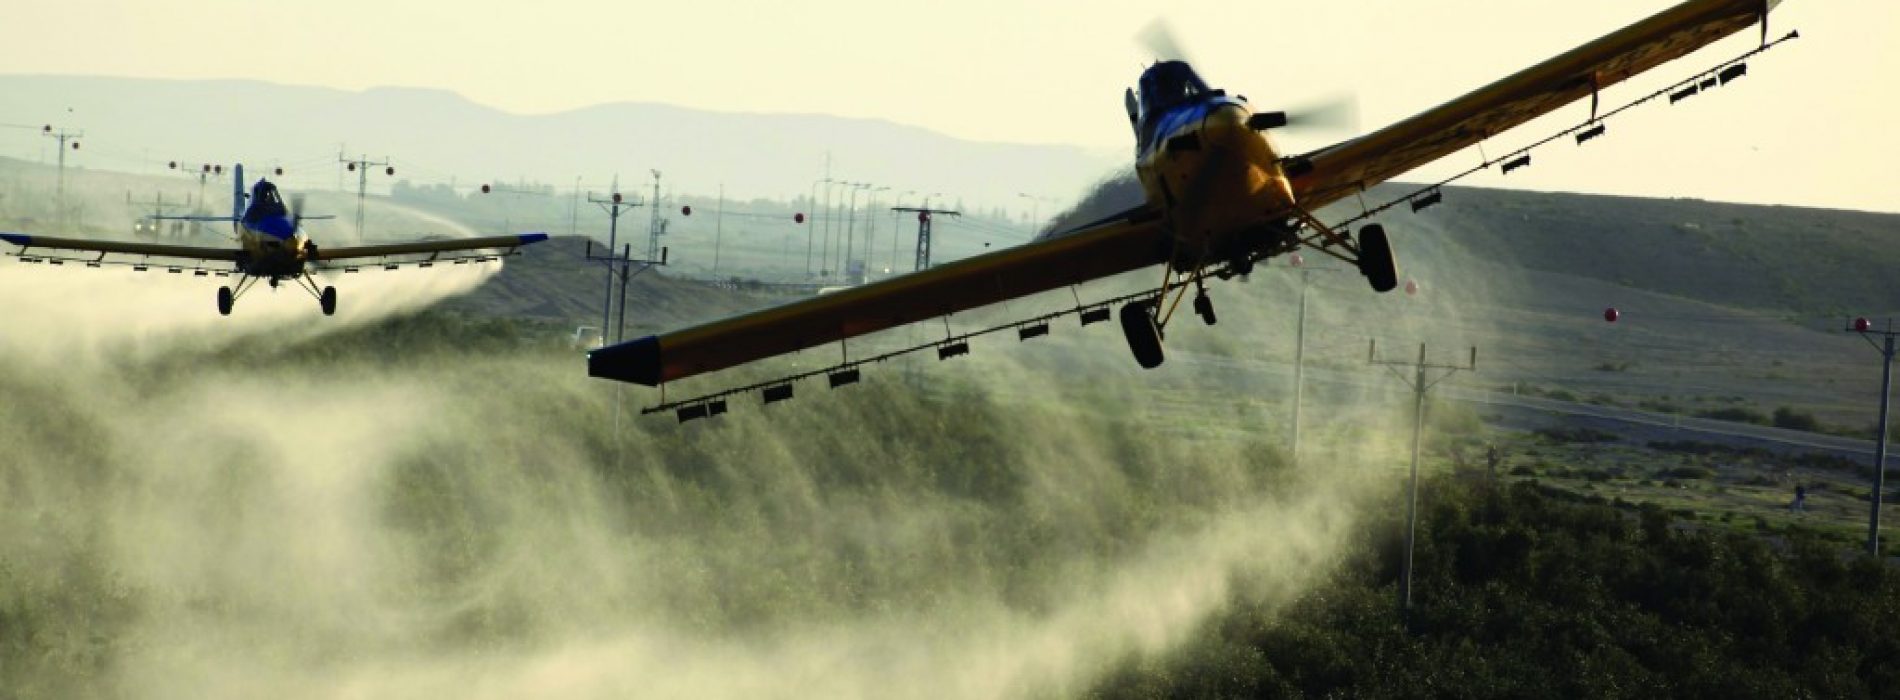 Gifmix op genetisch gemanipuleerde soja van Monsanto groot gevaar voor de gezondheid: “We zijn geschokt”